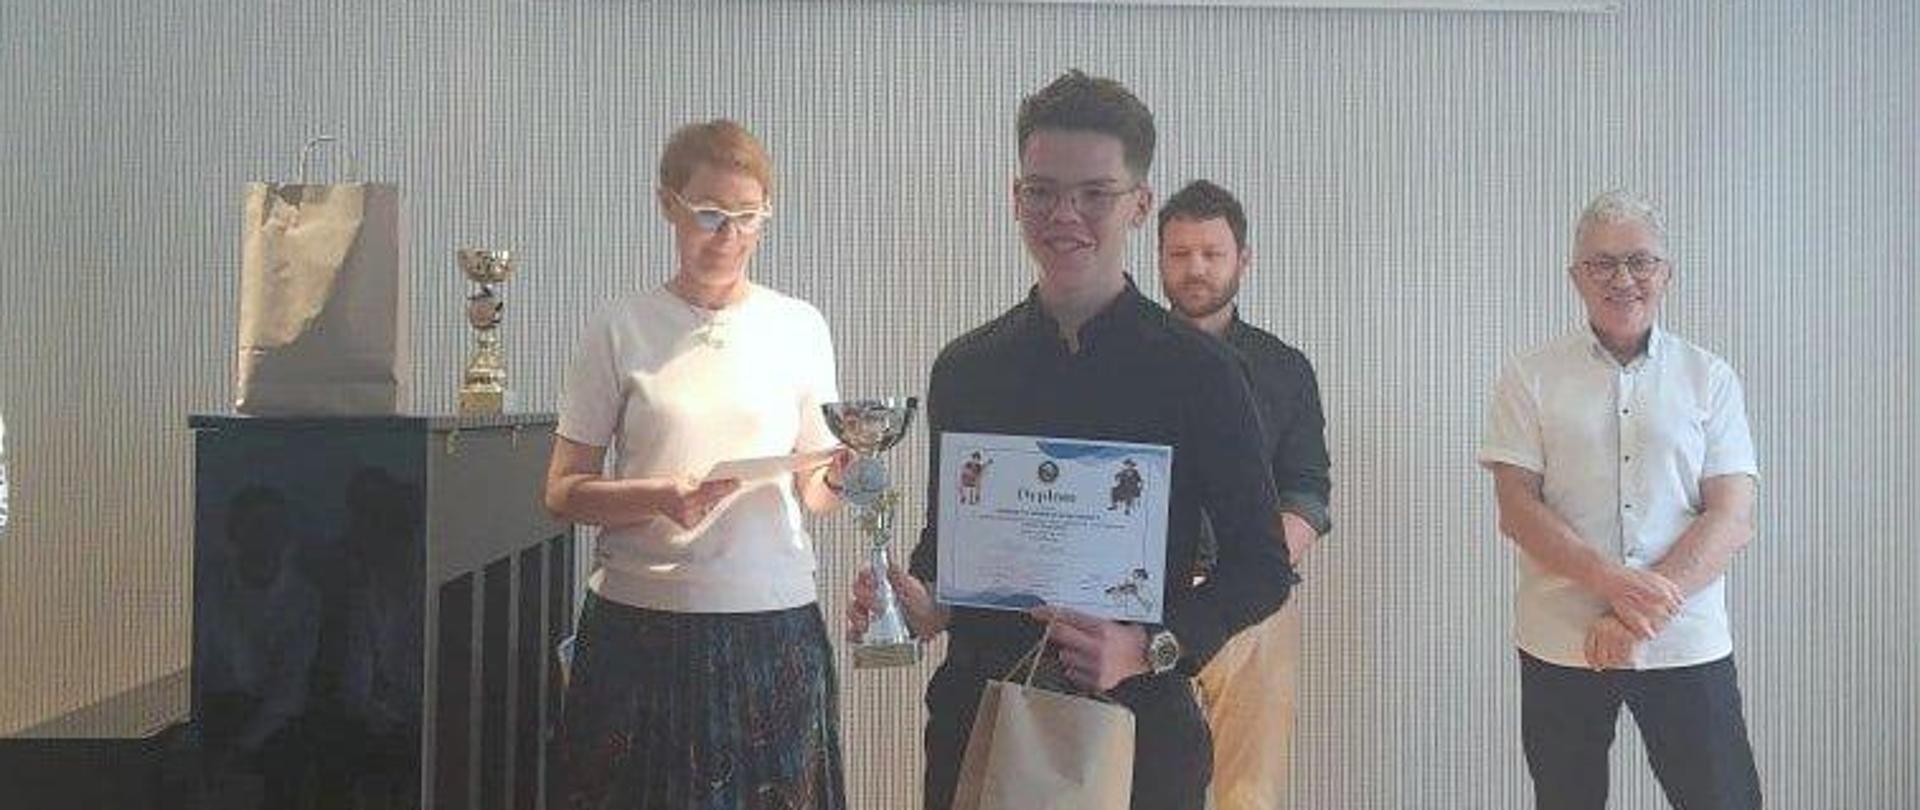 Uczeń trzymający puchar i dyplom, za nim trzy osoby (jury konkursu).